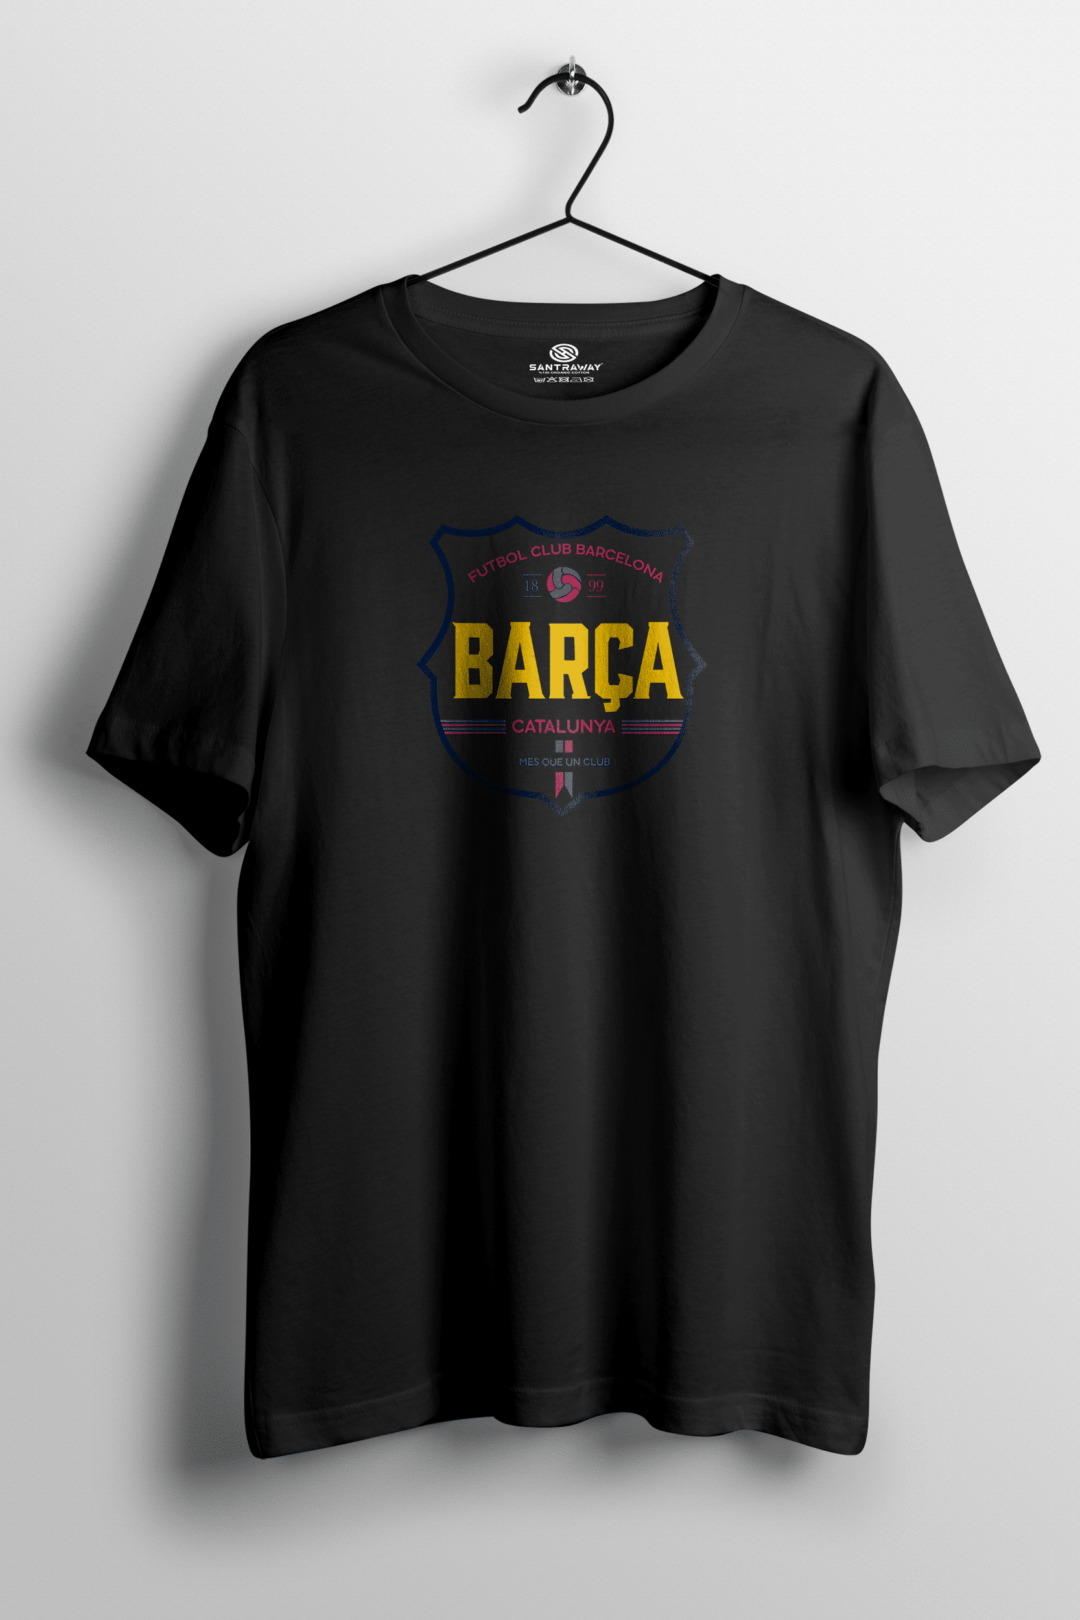 Barcelona Catalunya Siyah Tshirt